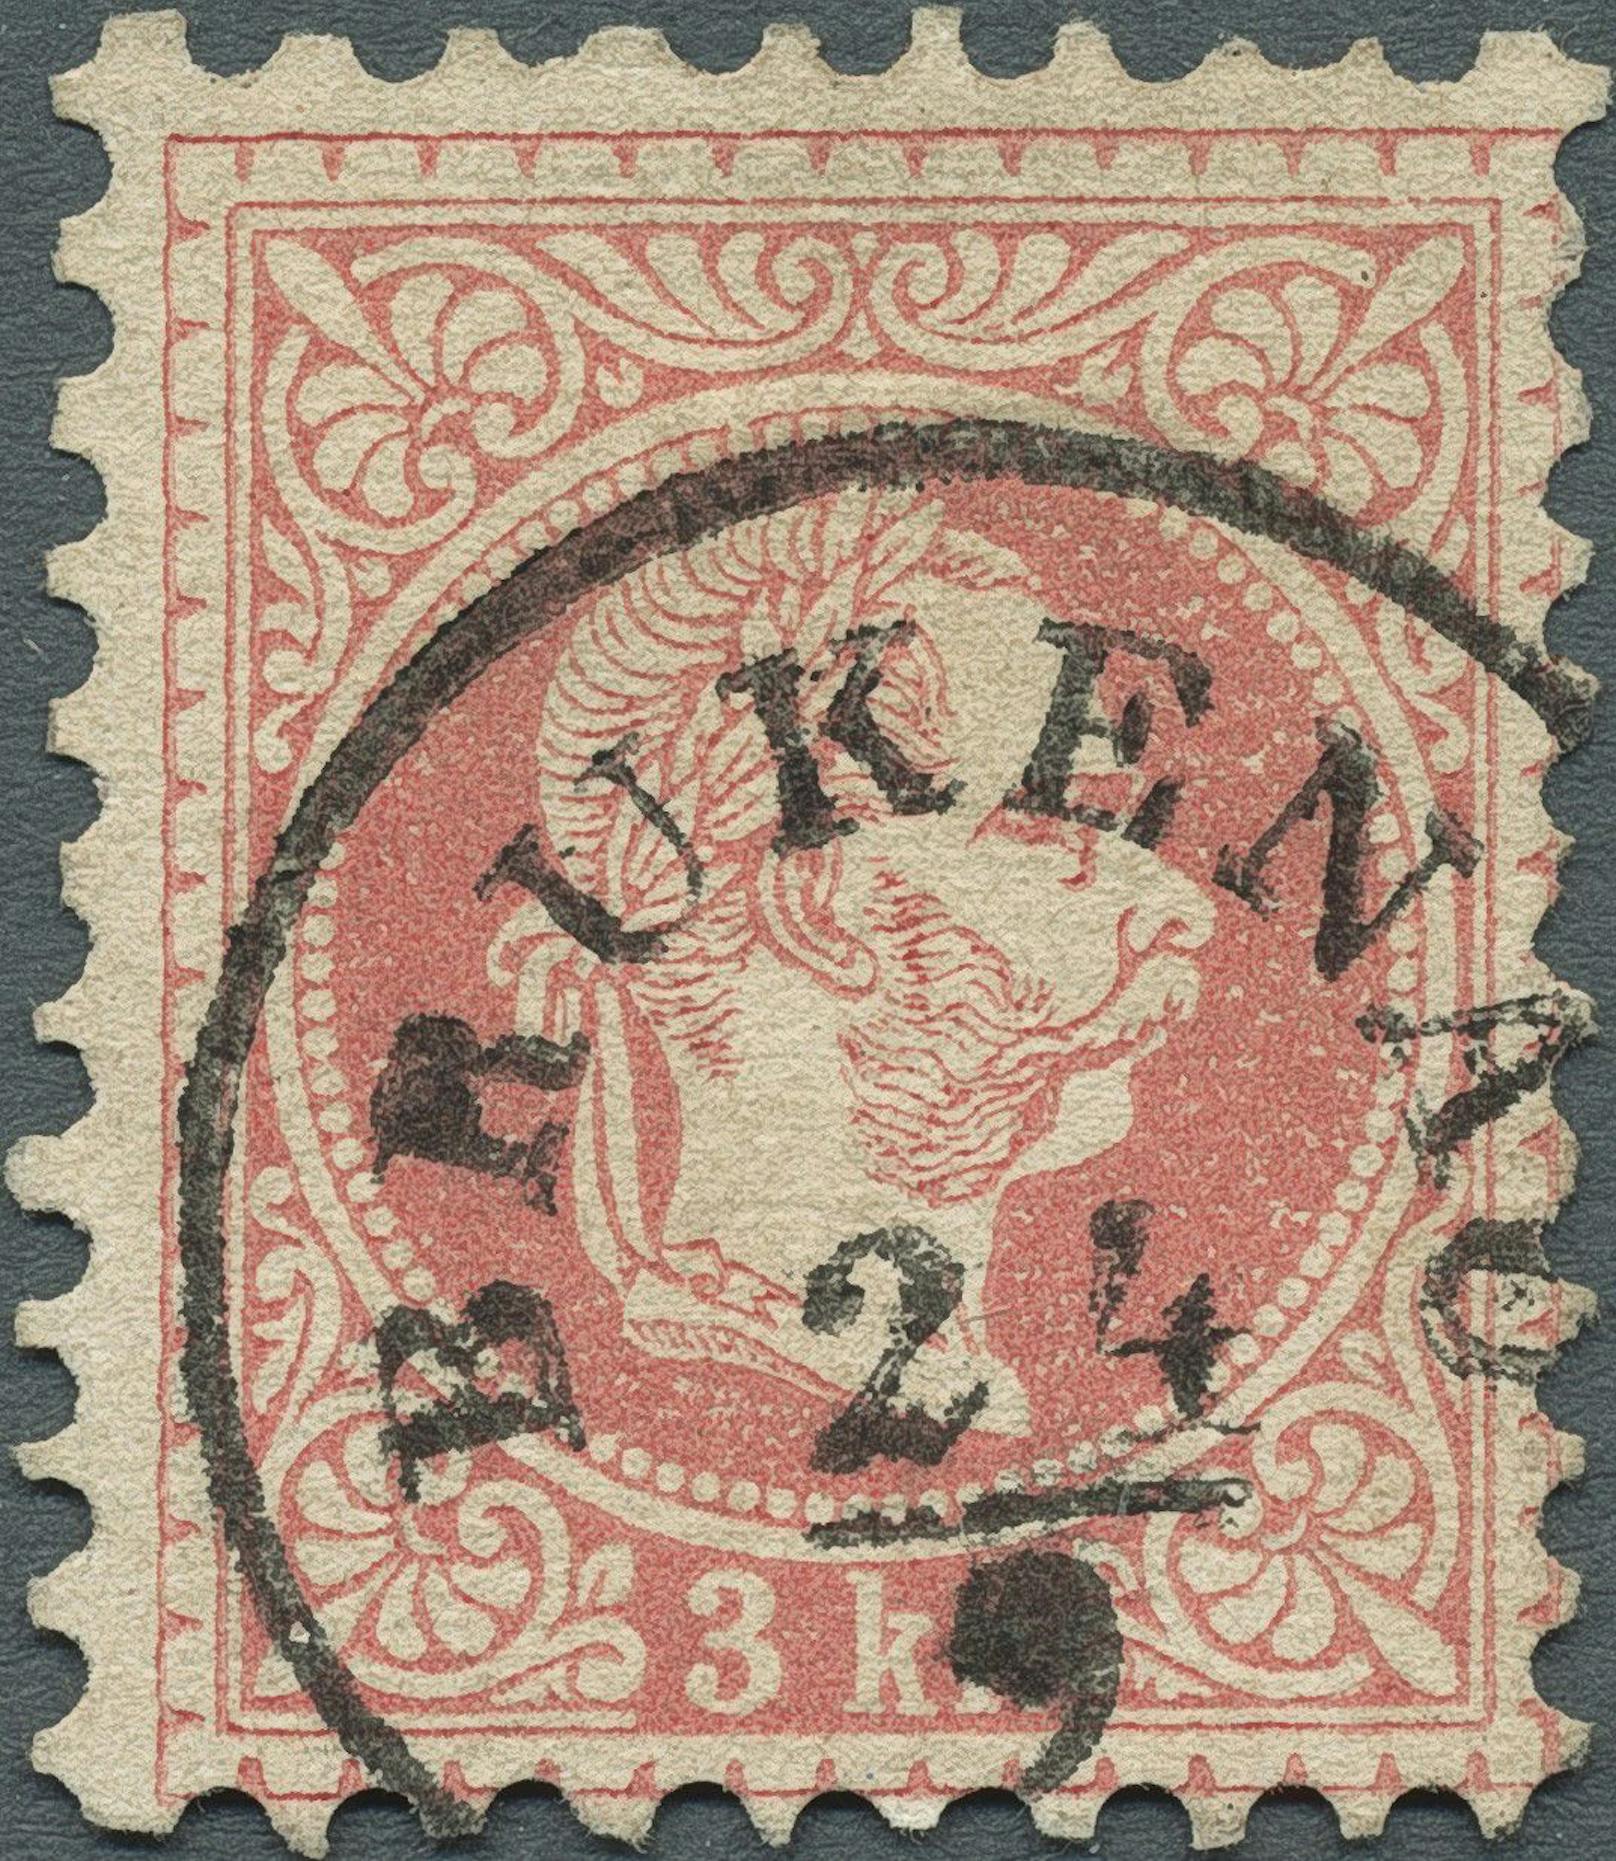 Die teuerste Österreichisch-Ungarische Marke: 3 Kreuzer Farbfehldruck 1867 in Rot statt Grün aus der Sammlung König Carol II von Rumänien.